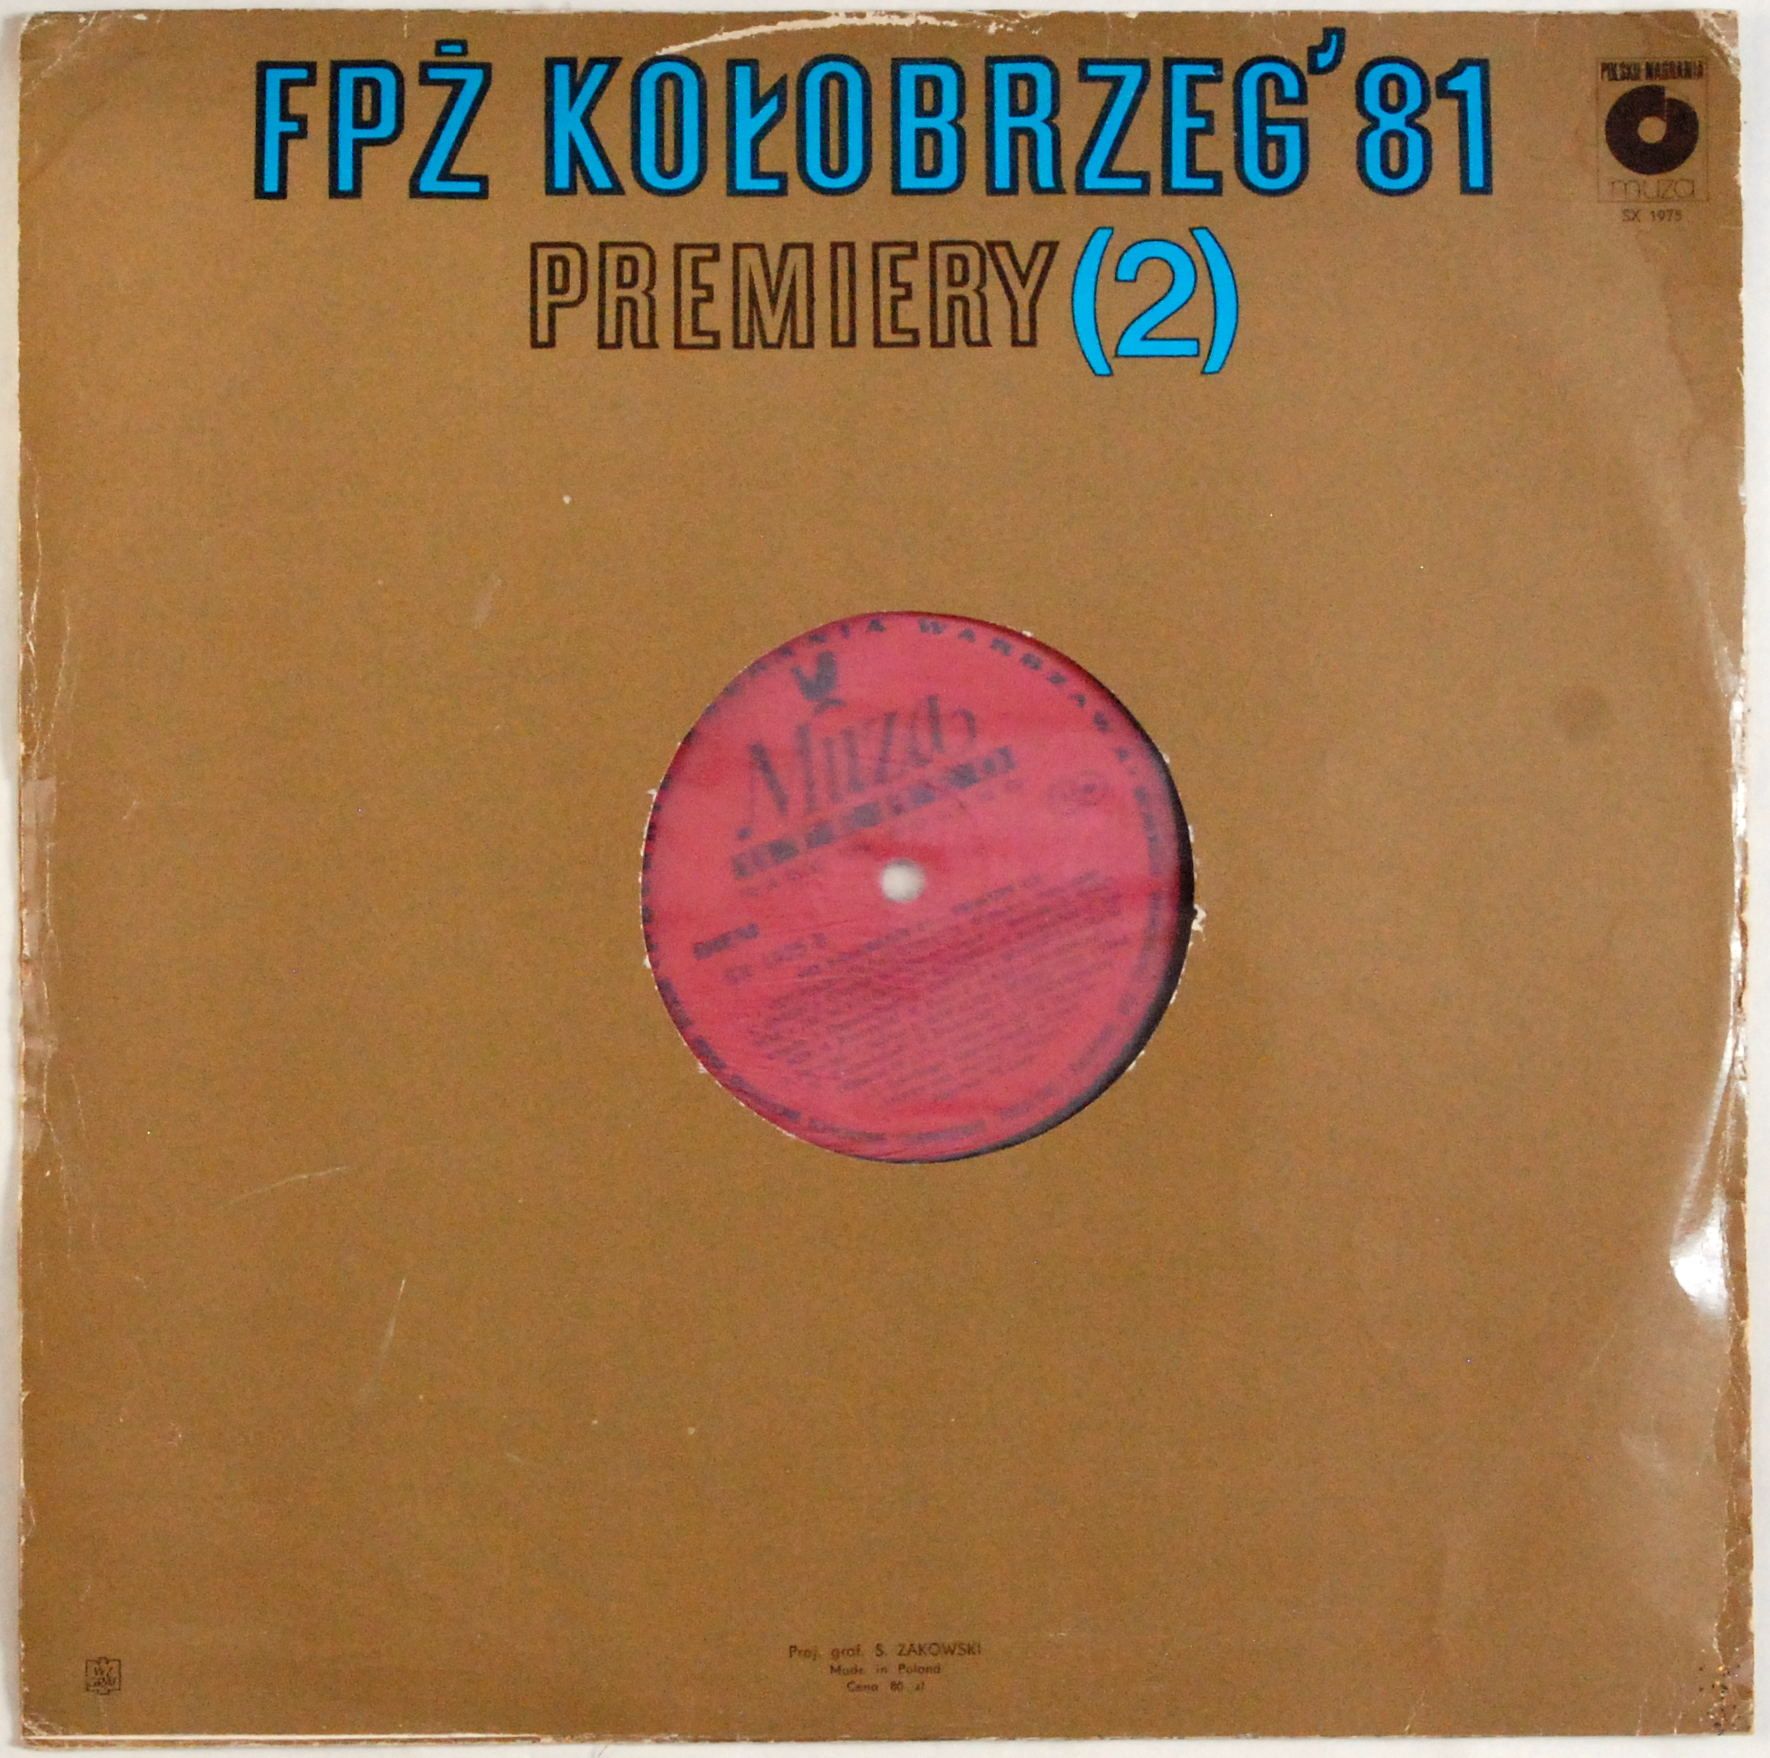 VA - FPŻ Kołobrzeg' 81 Premiery (2) (SX 1975)